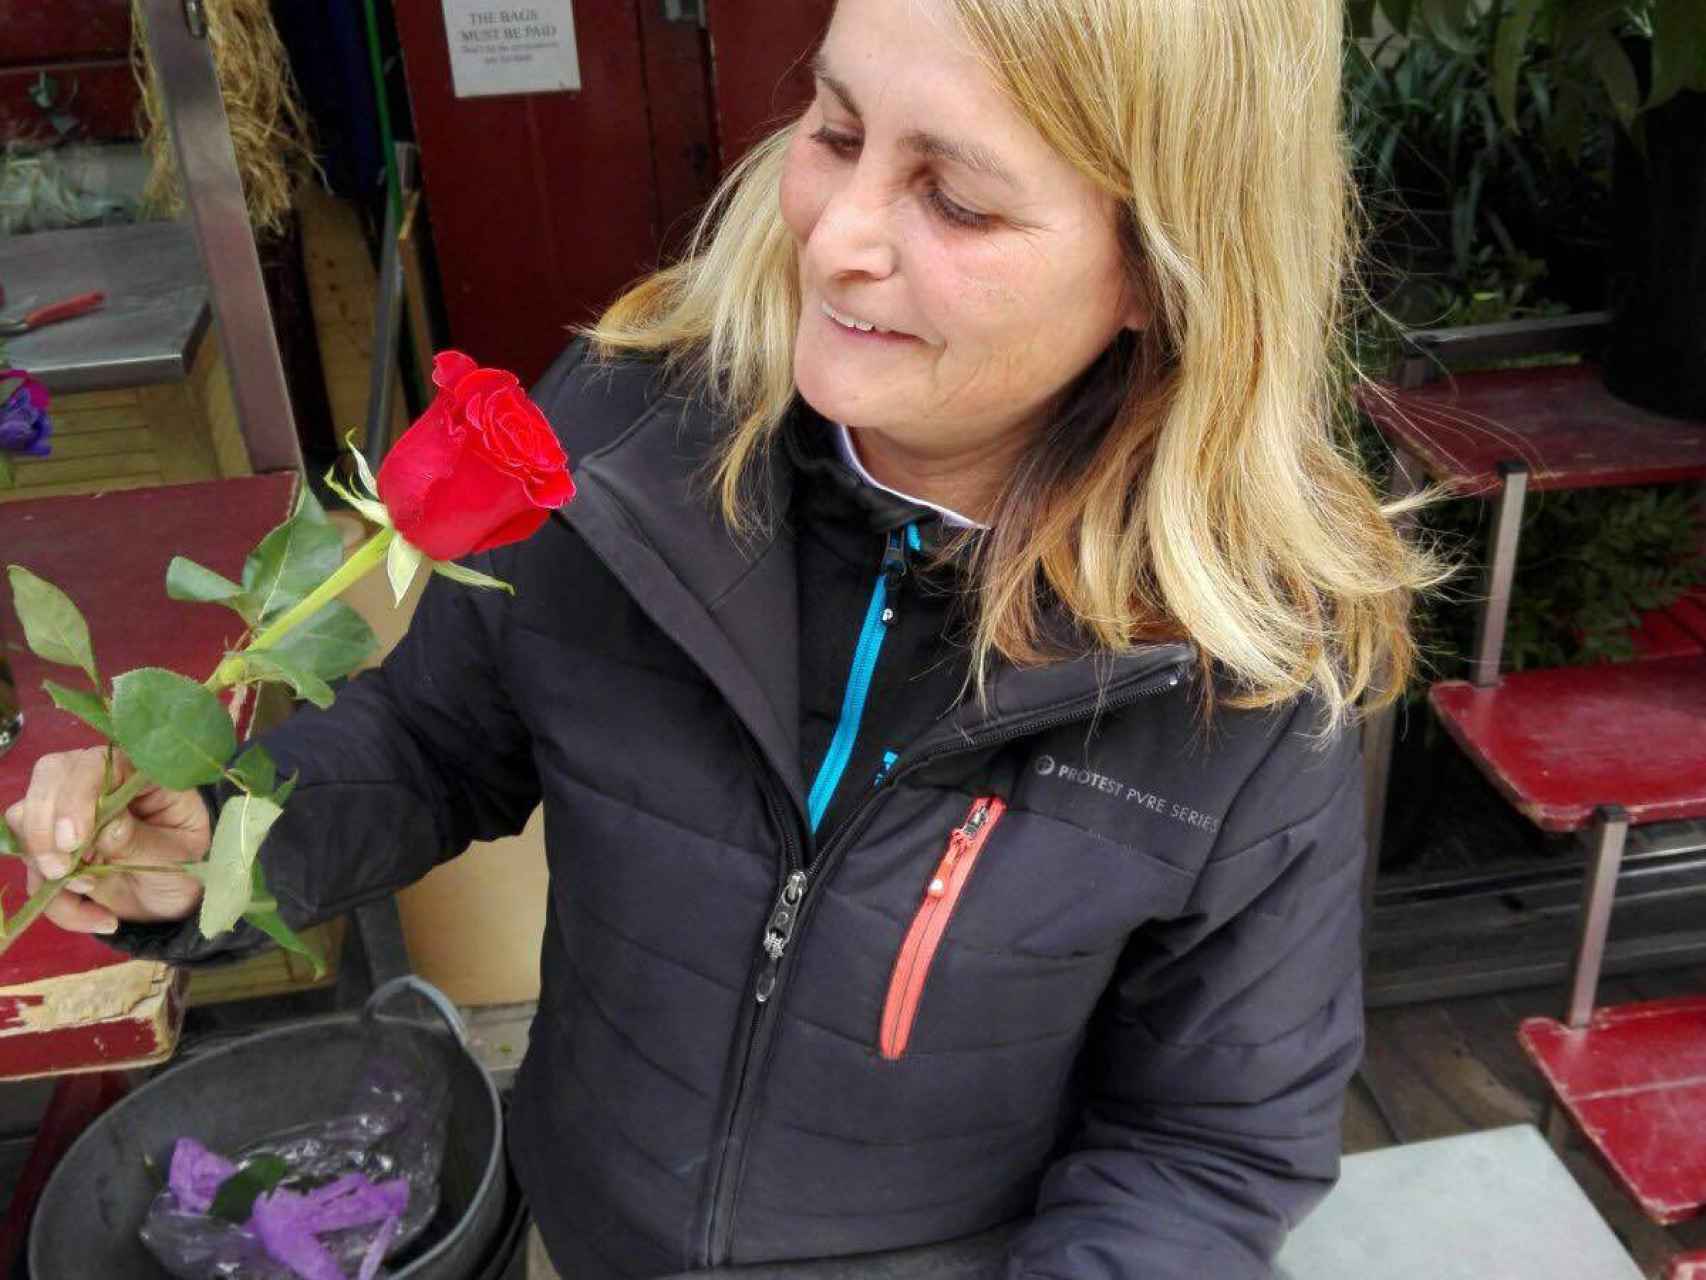 Rosas amarillas en Sant Jordi: la última ocurrencia indepe que destrozará a  la industria florista